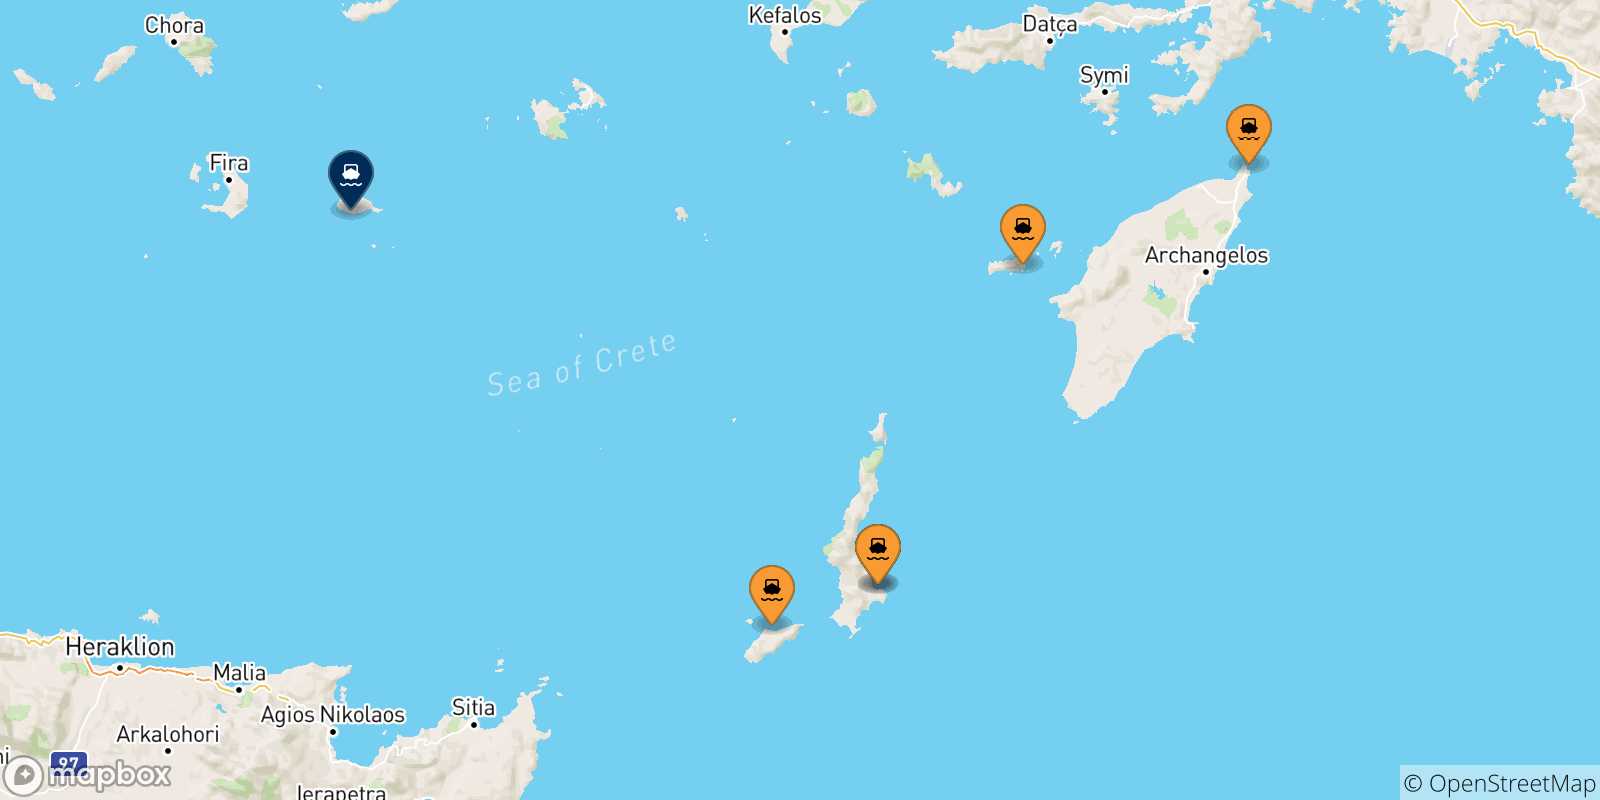 Mappa delle possibili rotte tra le Isole Dodecaneso e Anafi